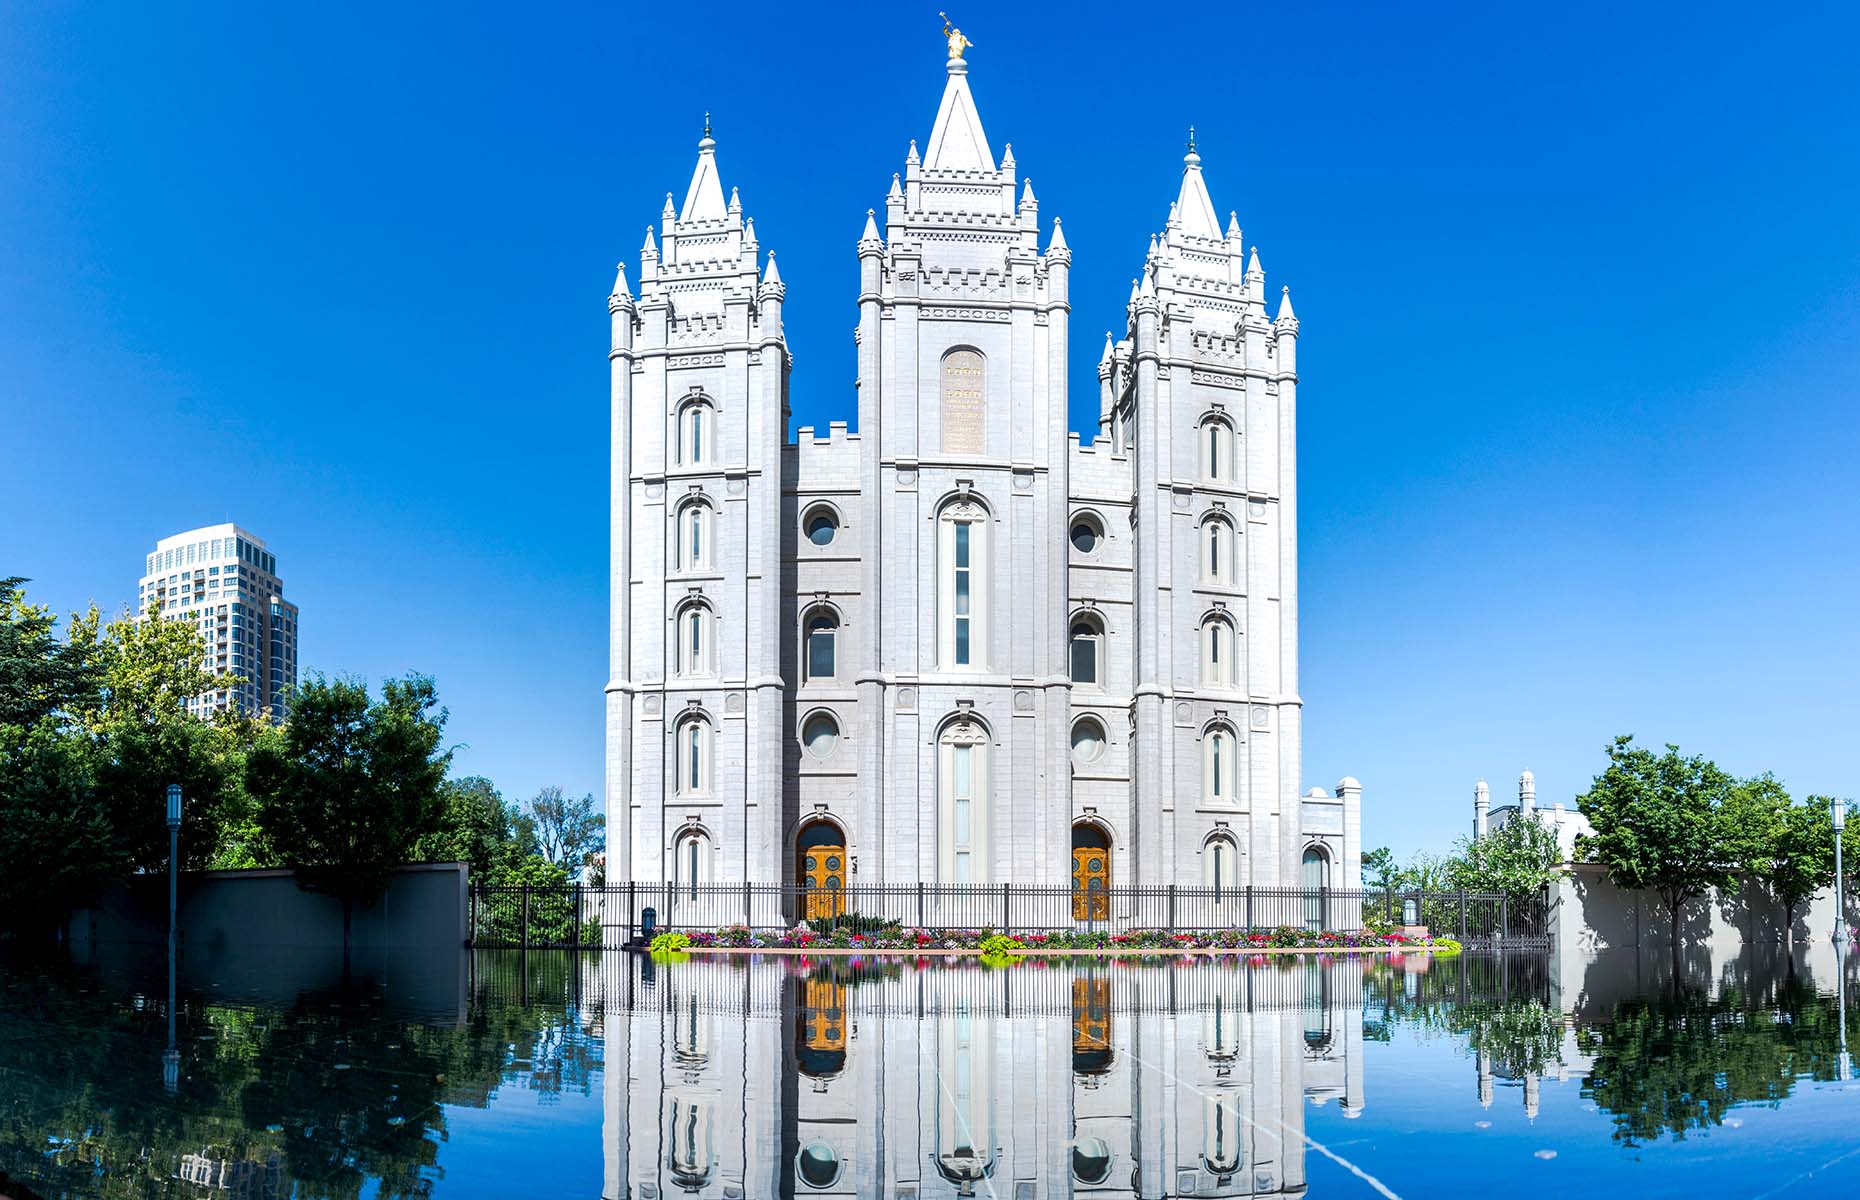 Temple Square, Salt Lake City, Utah. (Image: photozims/Shutterstock)